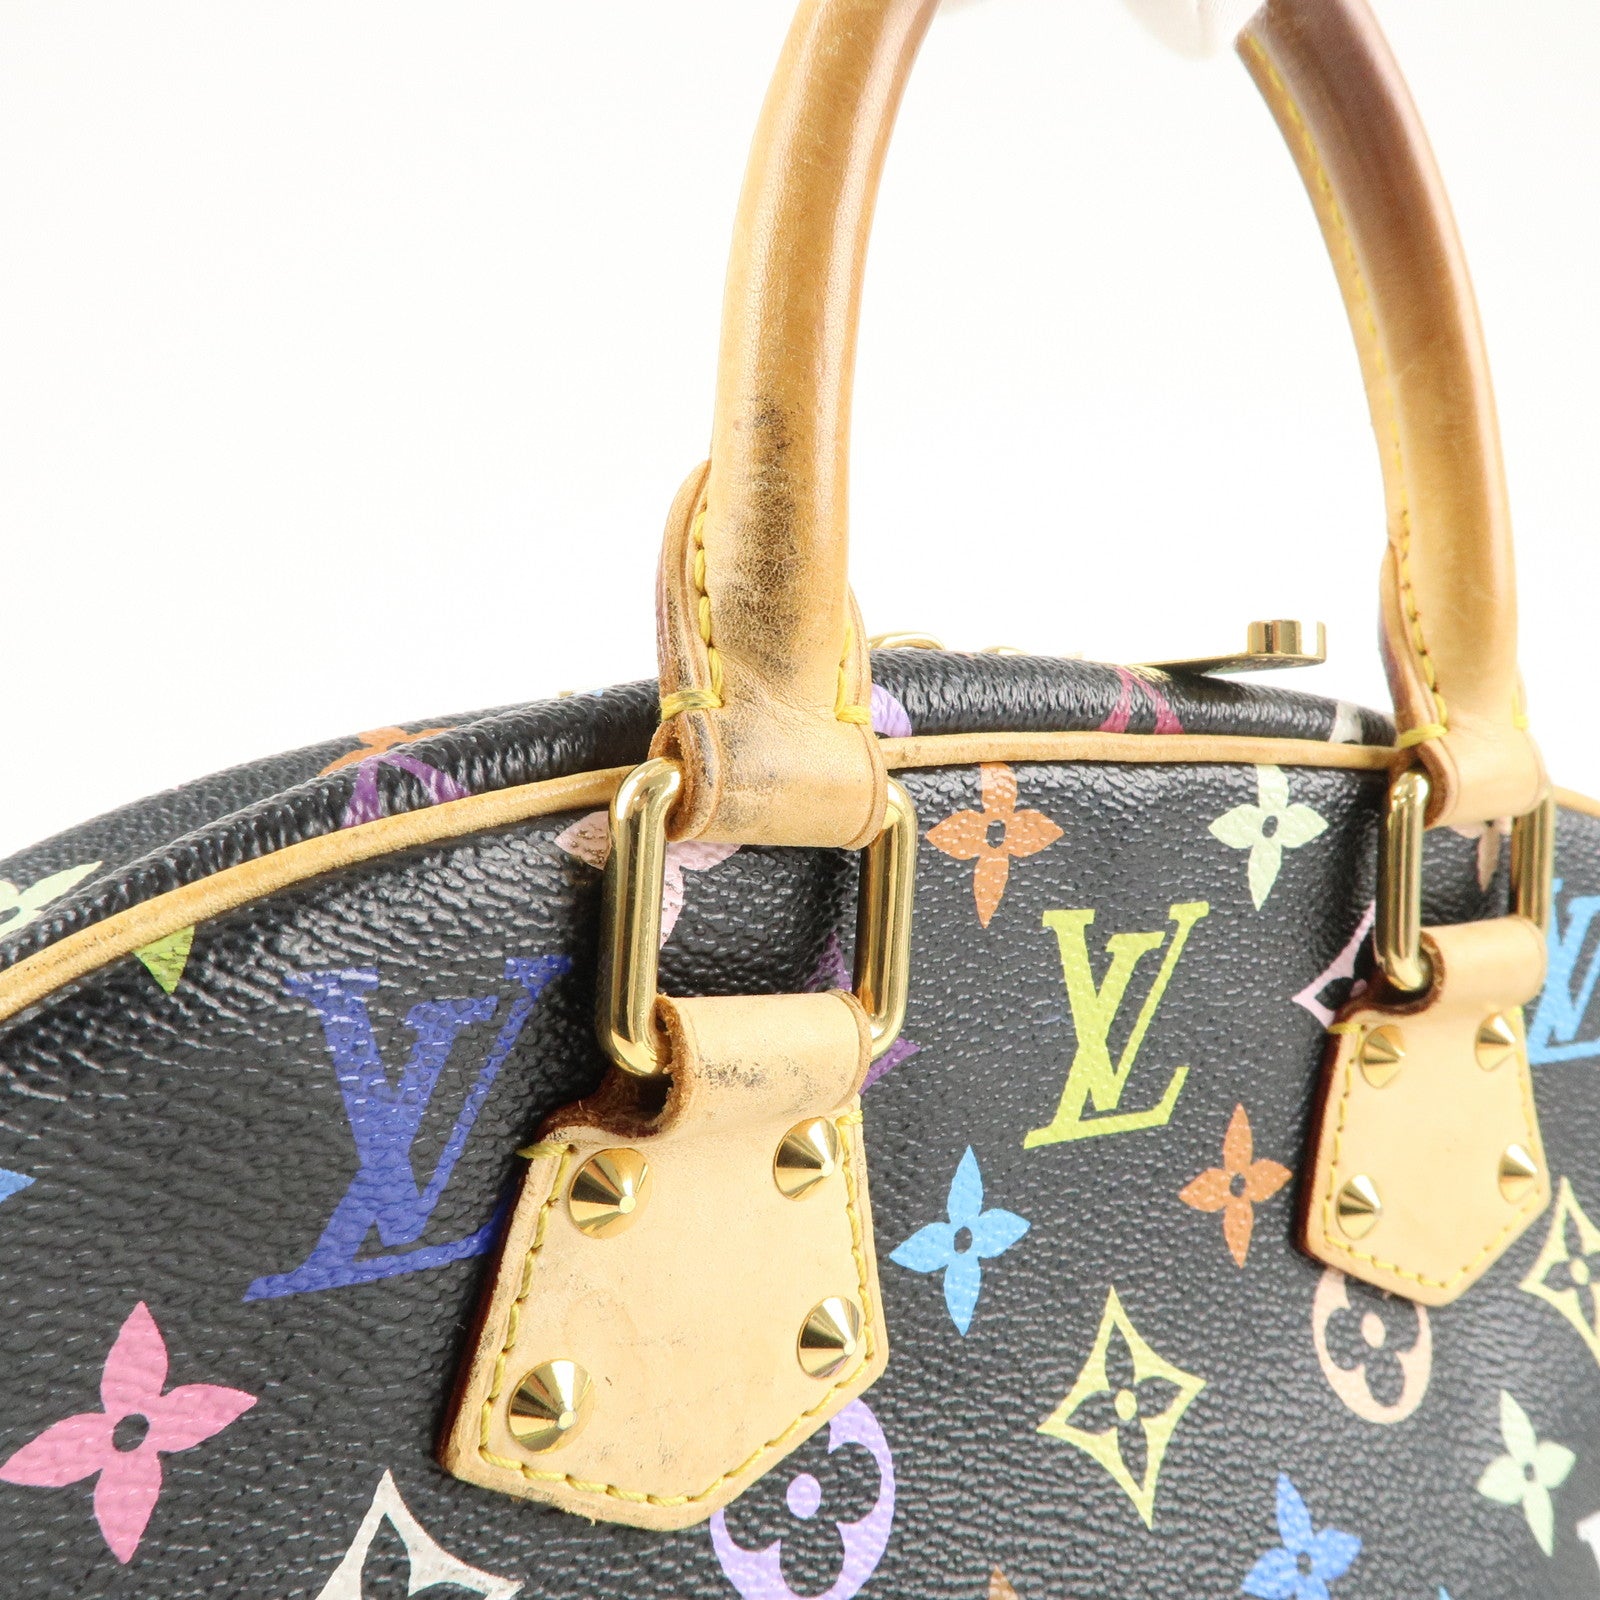 Trouville leather handbag Louis Vuitton Multicolour in Leather